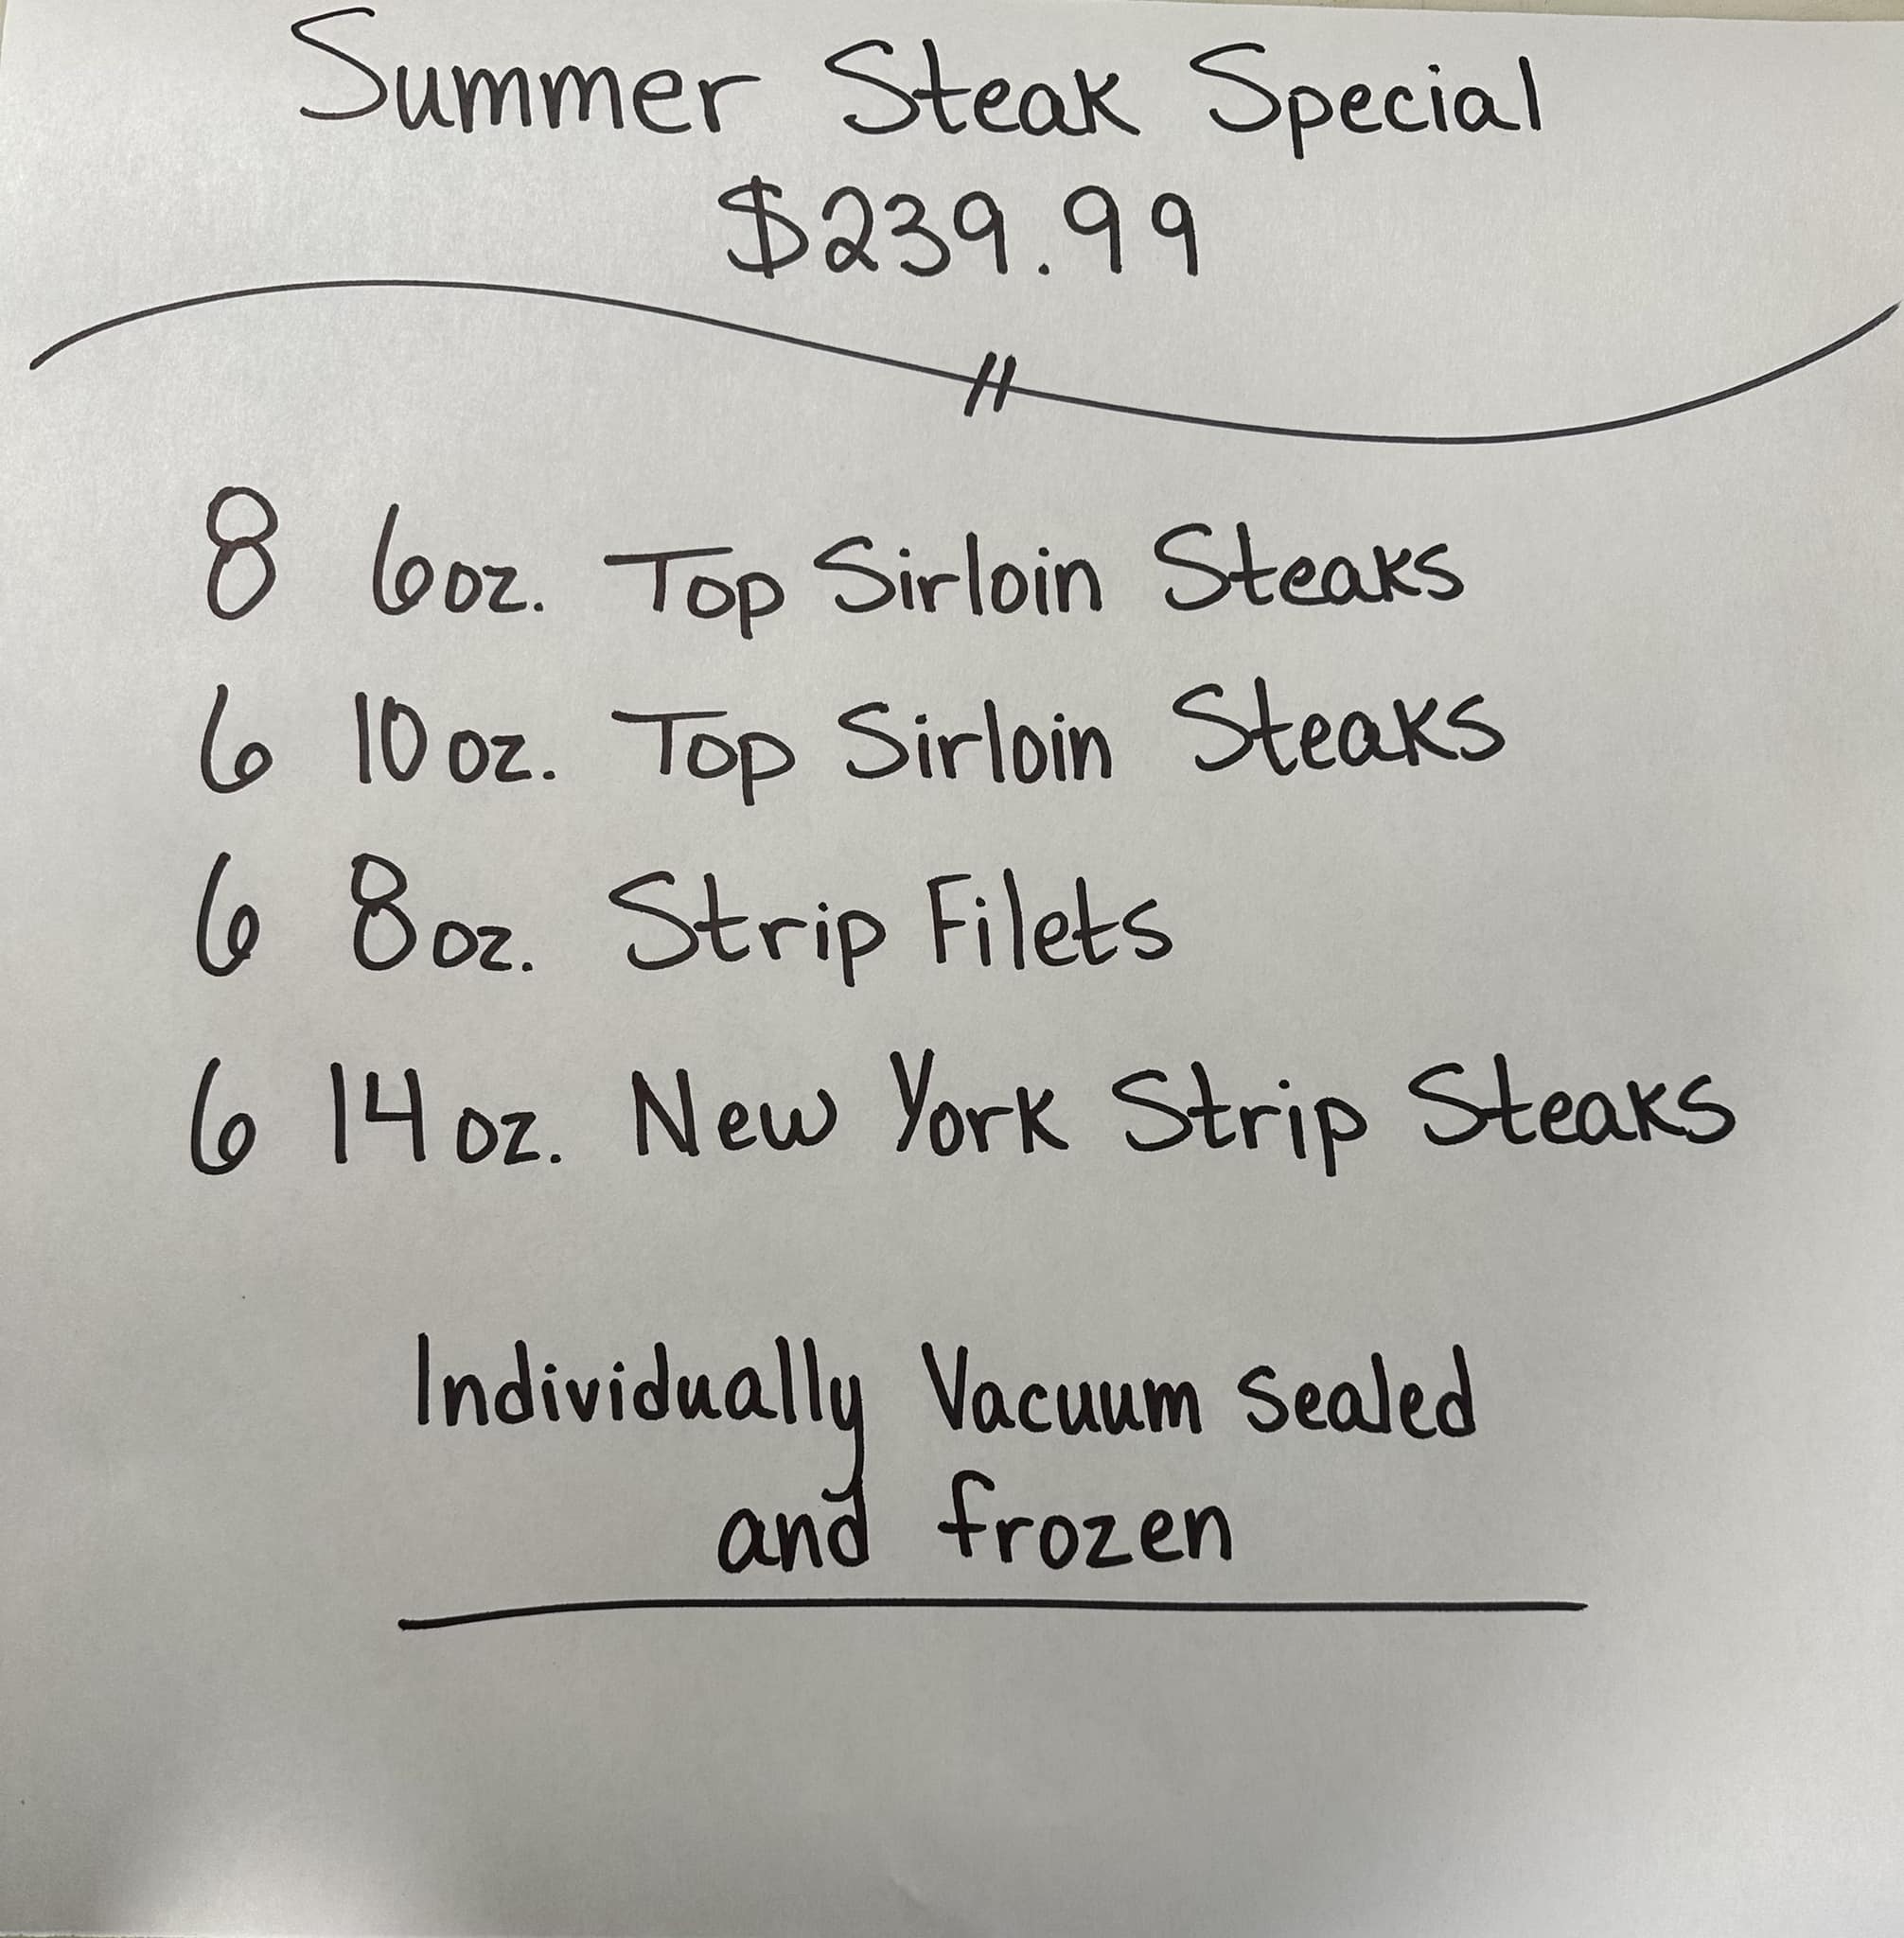 Summer Steak Special